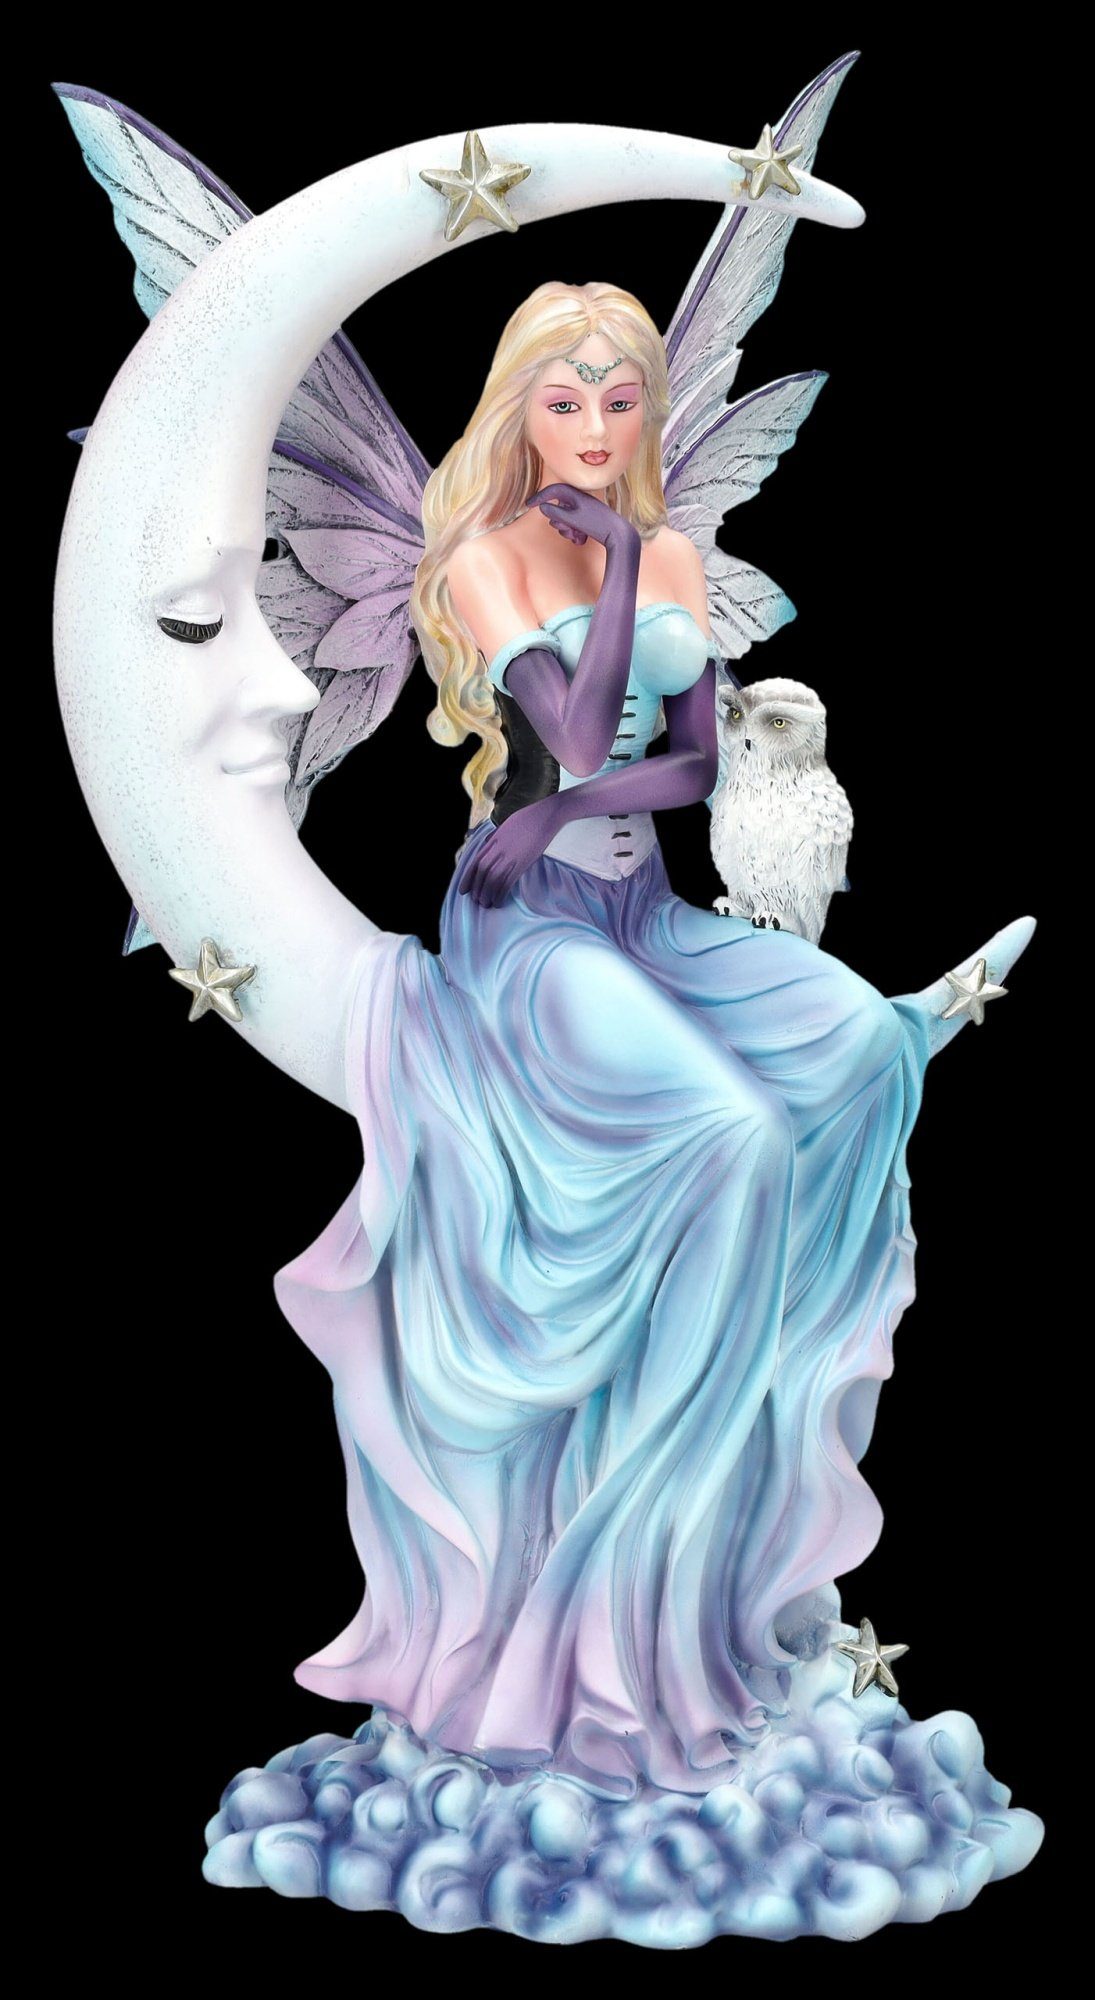 Figuren Shop GmbH Fantasy-Figur Elfenfigur - Wächterin der Träume auf Mond - Feefigur Dekoration Eule